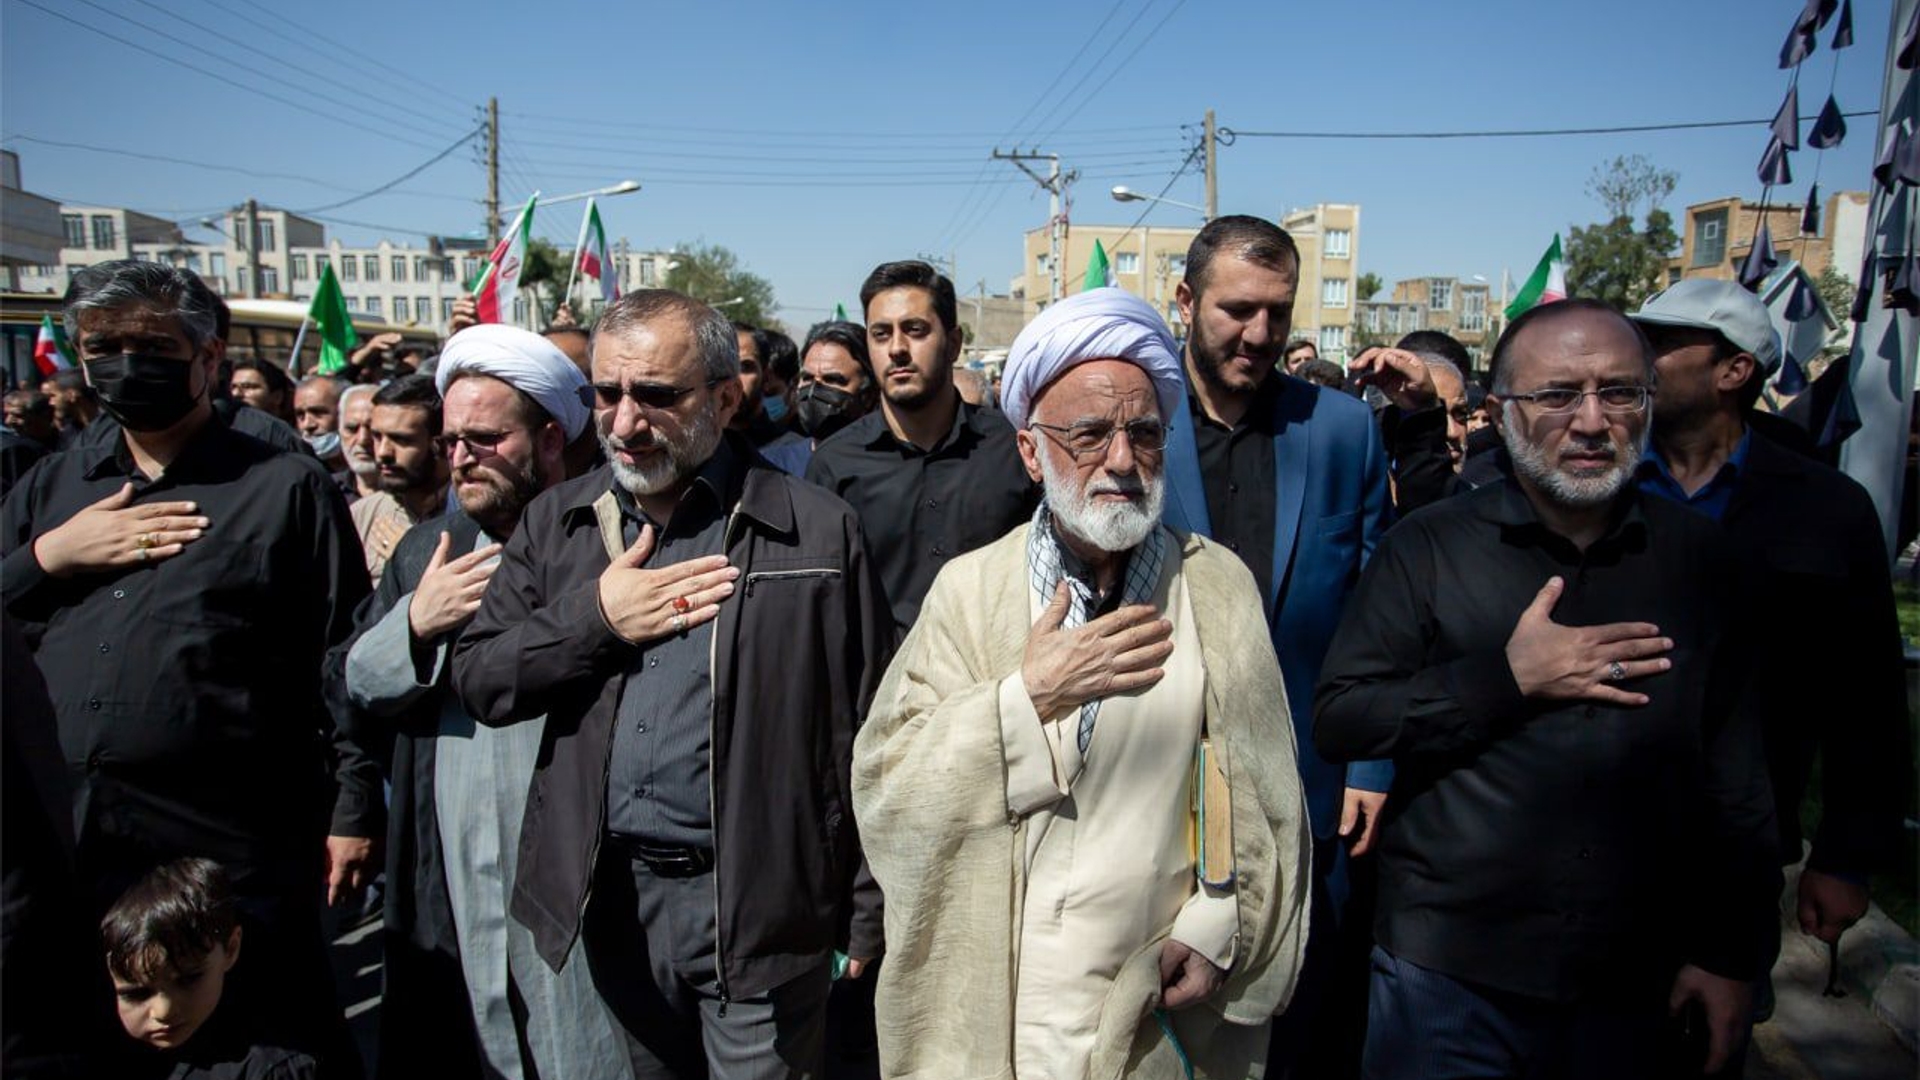 وقایع اخیر ناشی از کینه دشمنان نسبت به رشد و بالندگی انقلاب اسلامی است